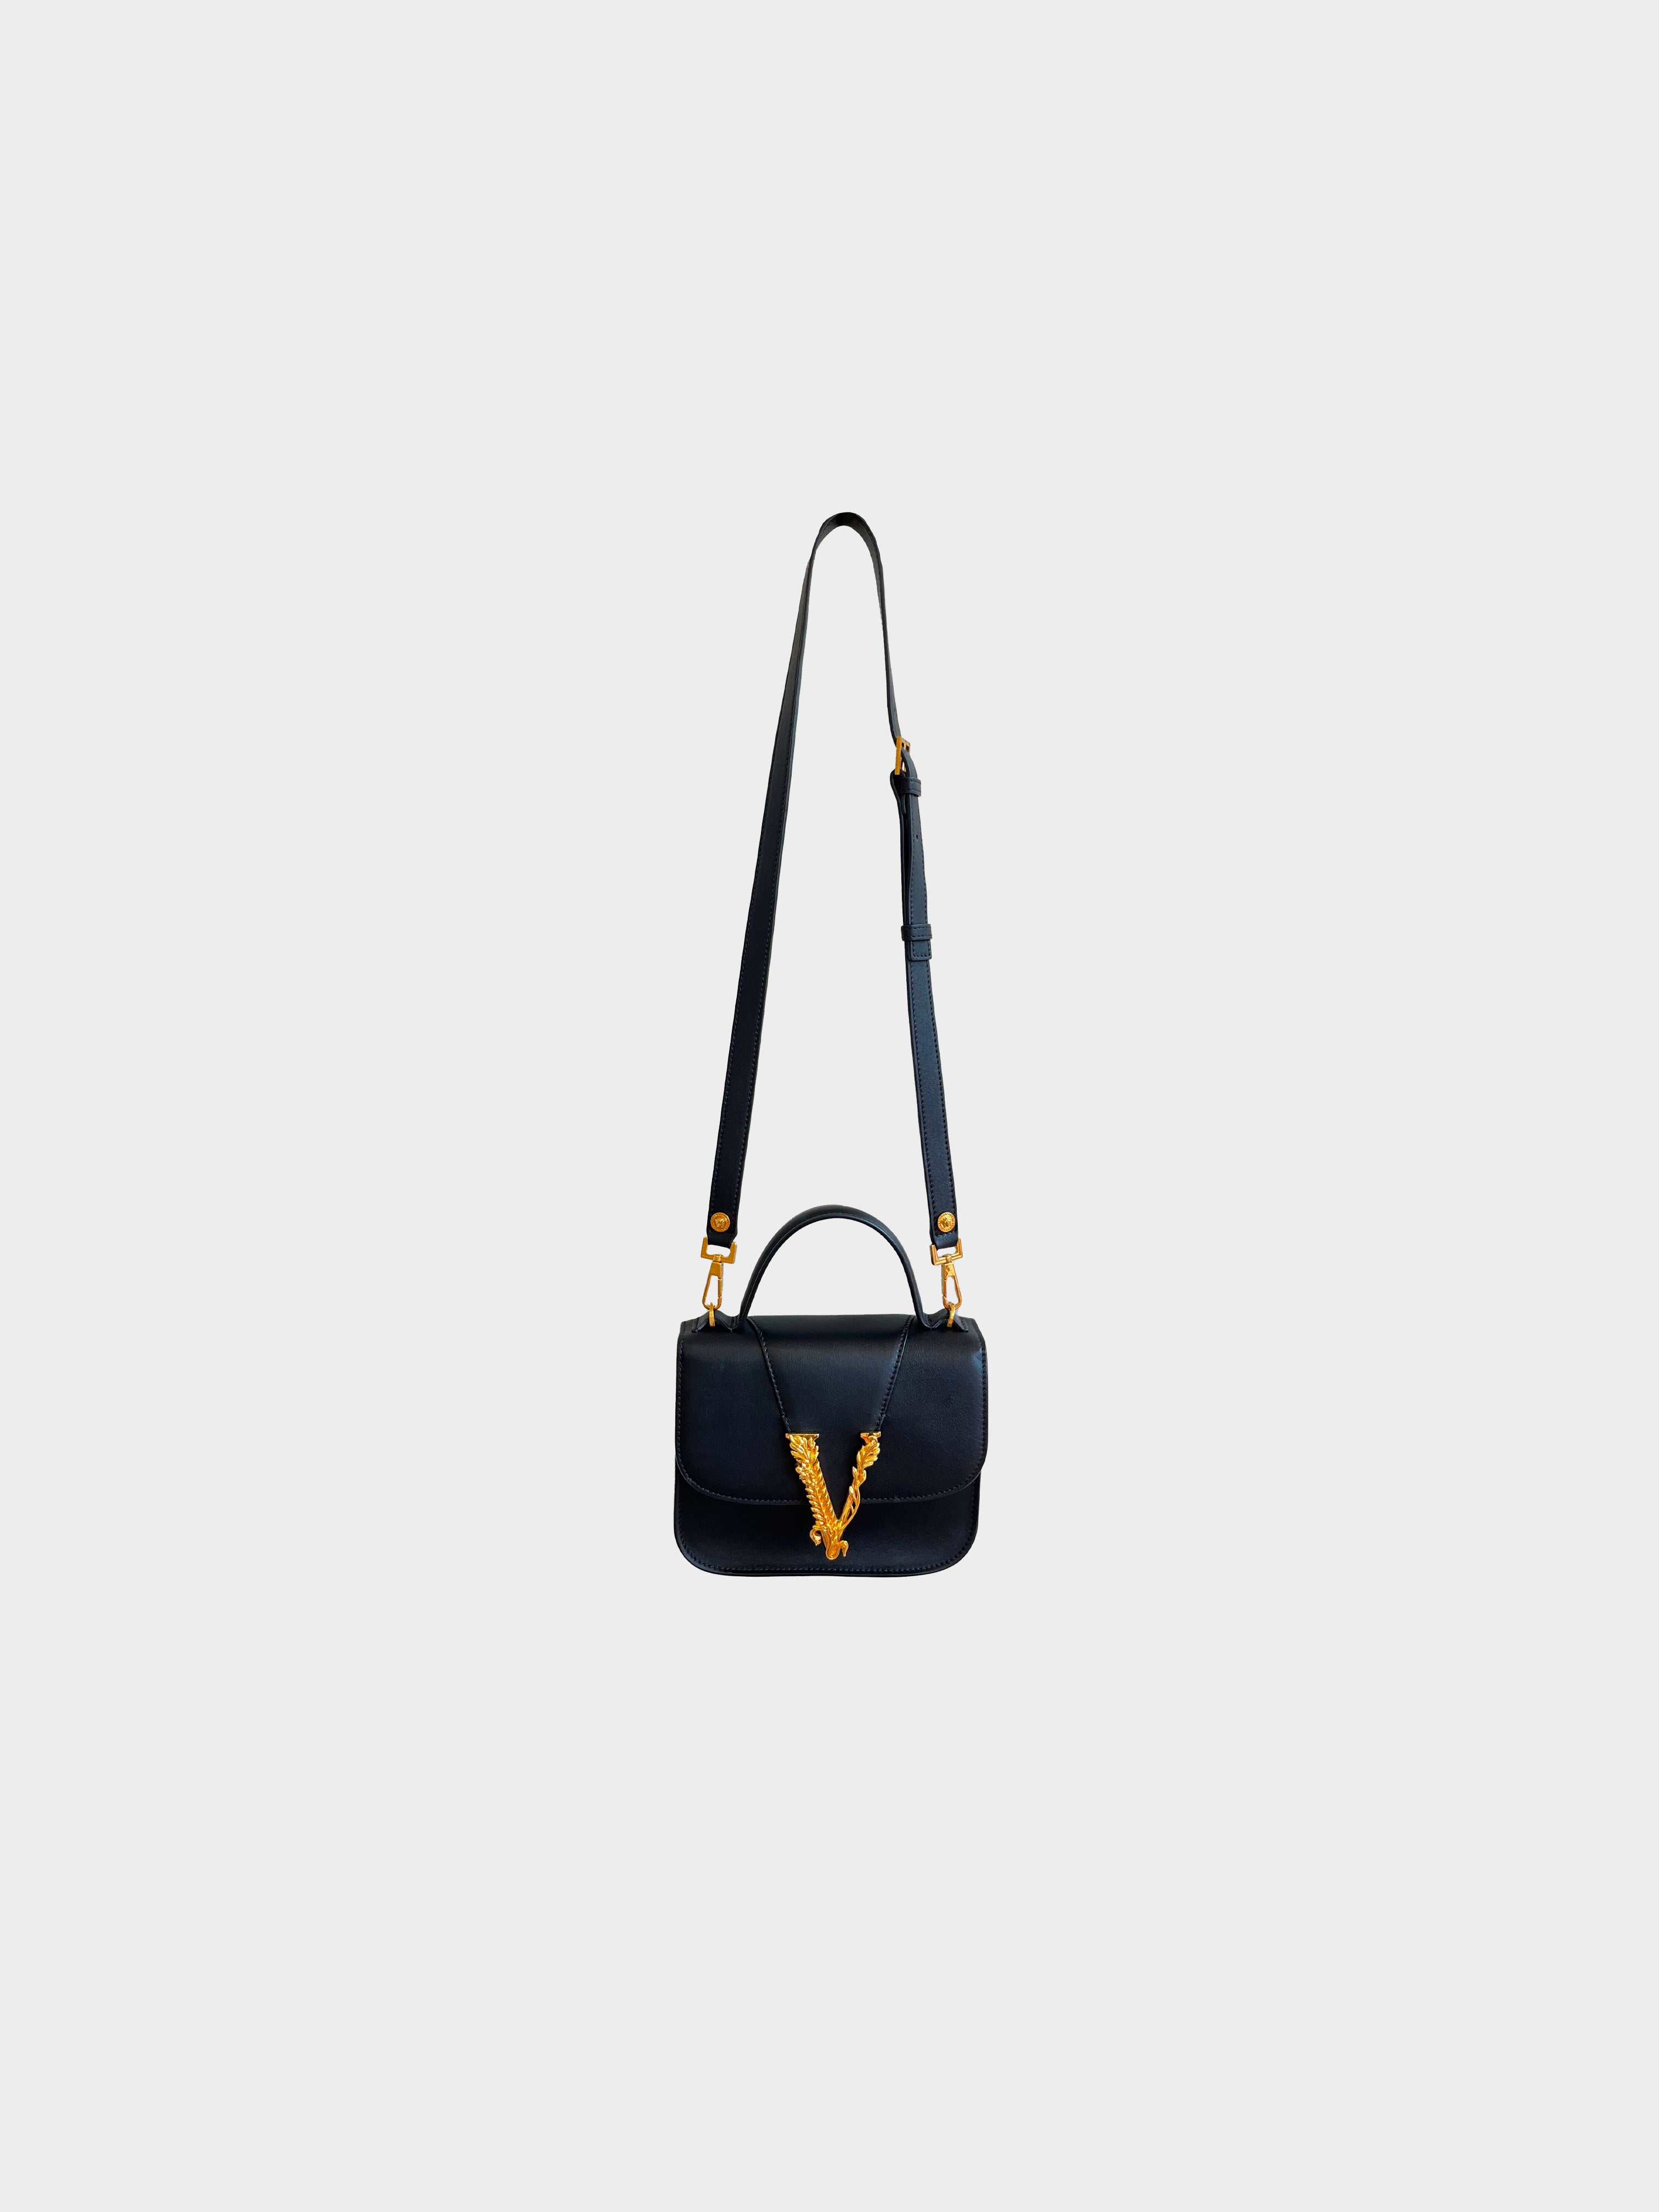 Versace 2020s Black Logo Virtus Mini Bag